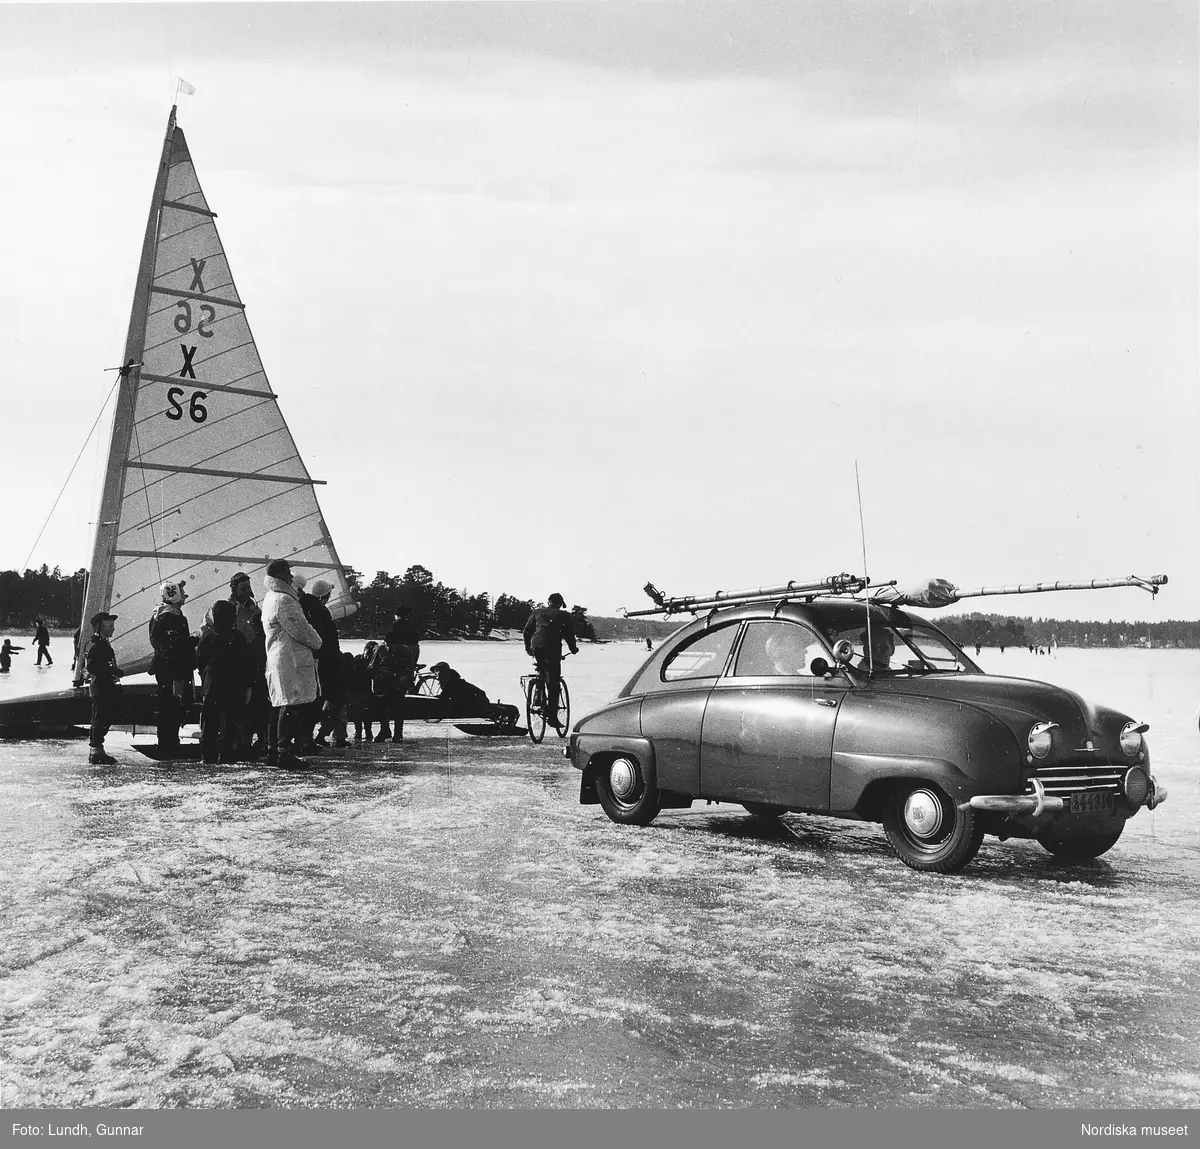 Människor står kring en isjakt på en frusen vik på Mälaren år 1954. En Saab 92 står på isen.